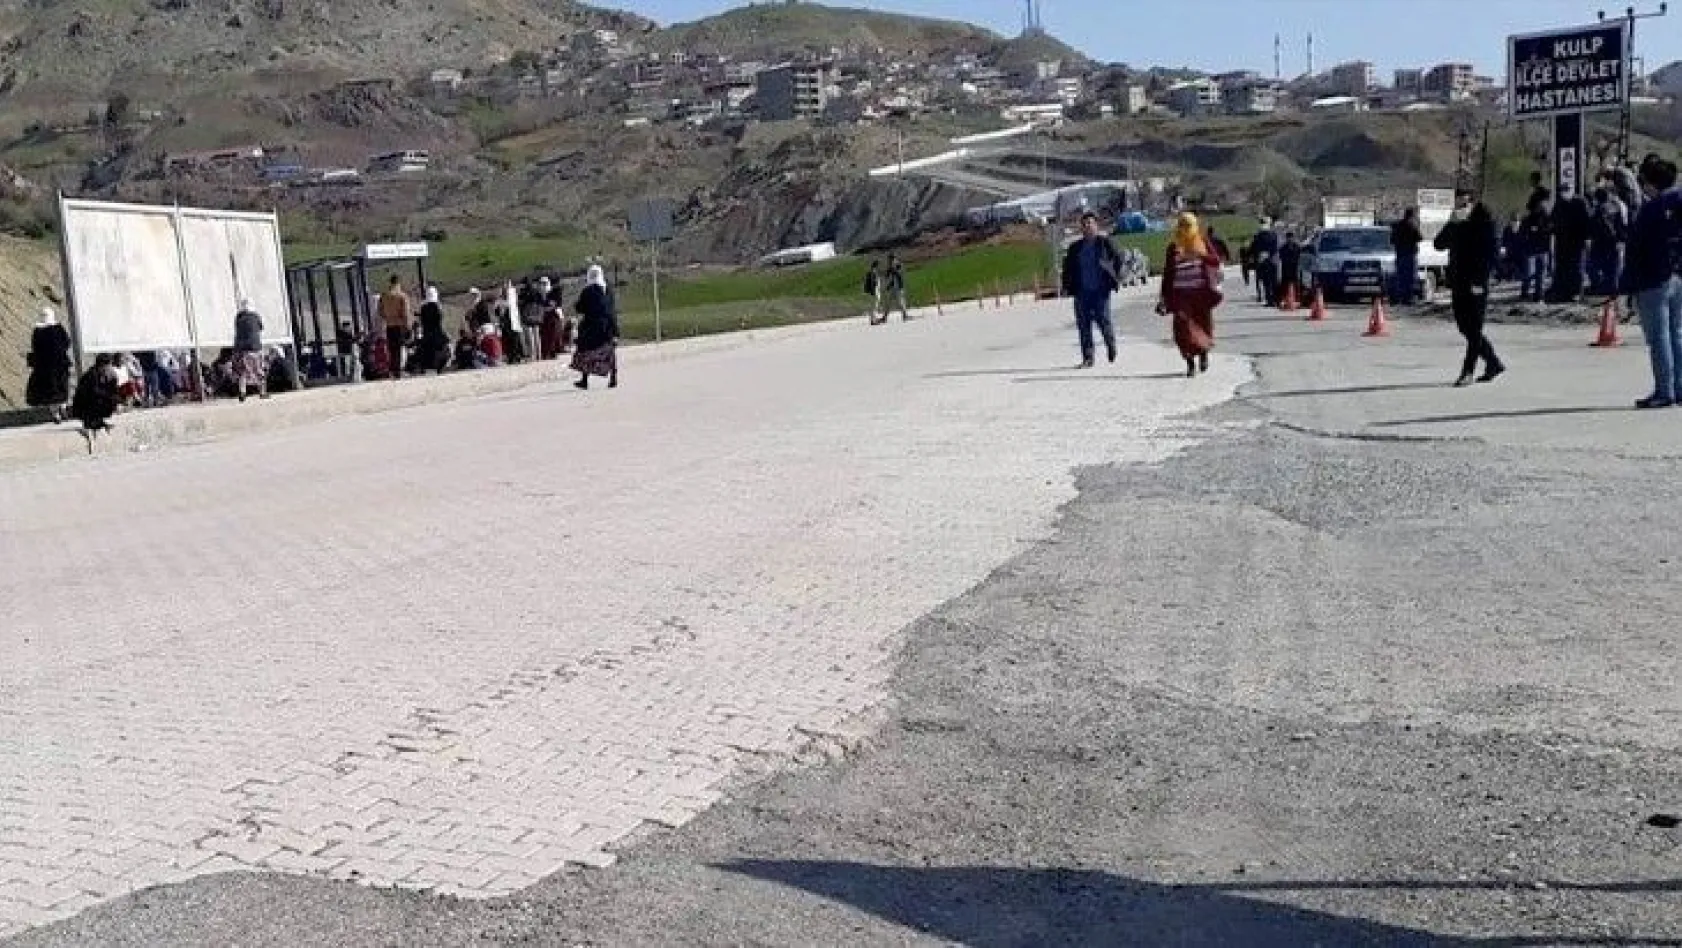 Diyarbakır'da PKK köylülere saldırdı!